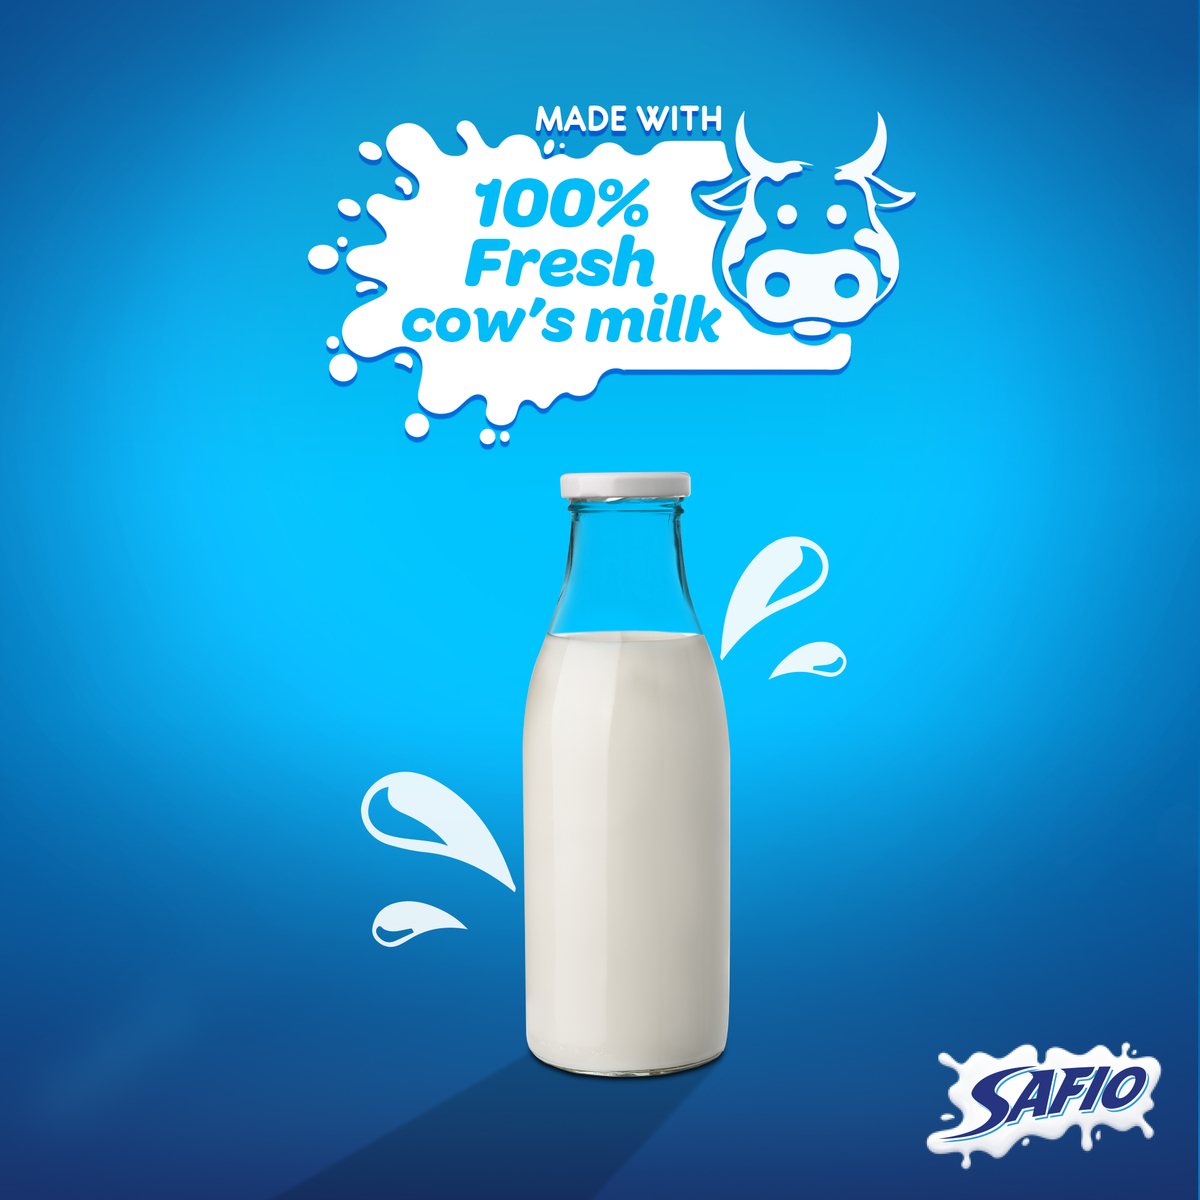 Safio UHT Milk Plain 6 x 200ml